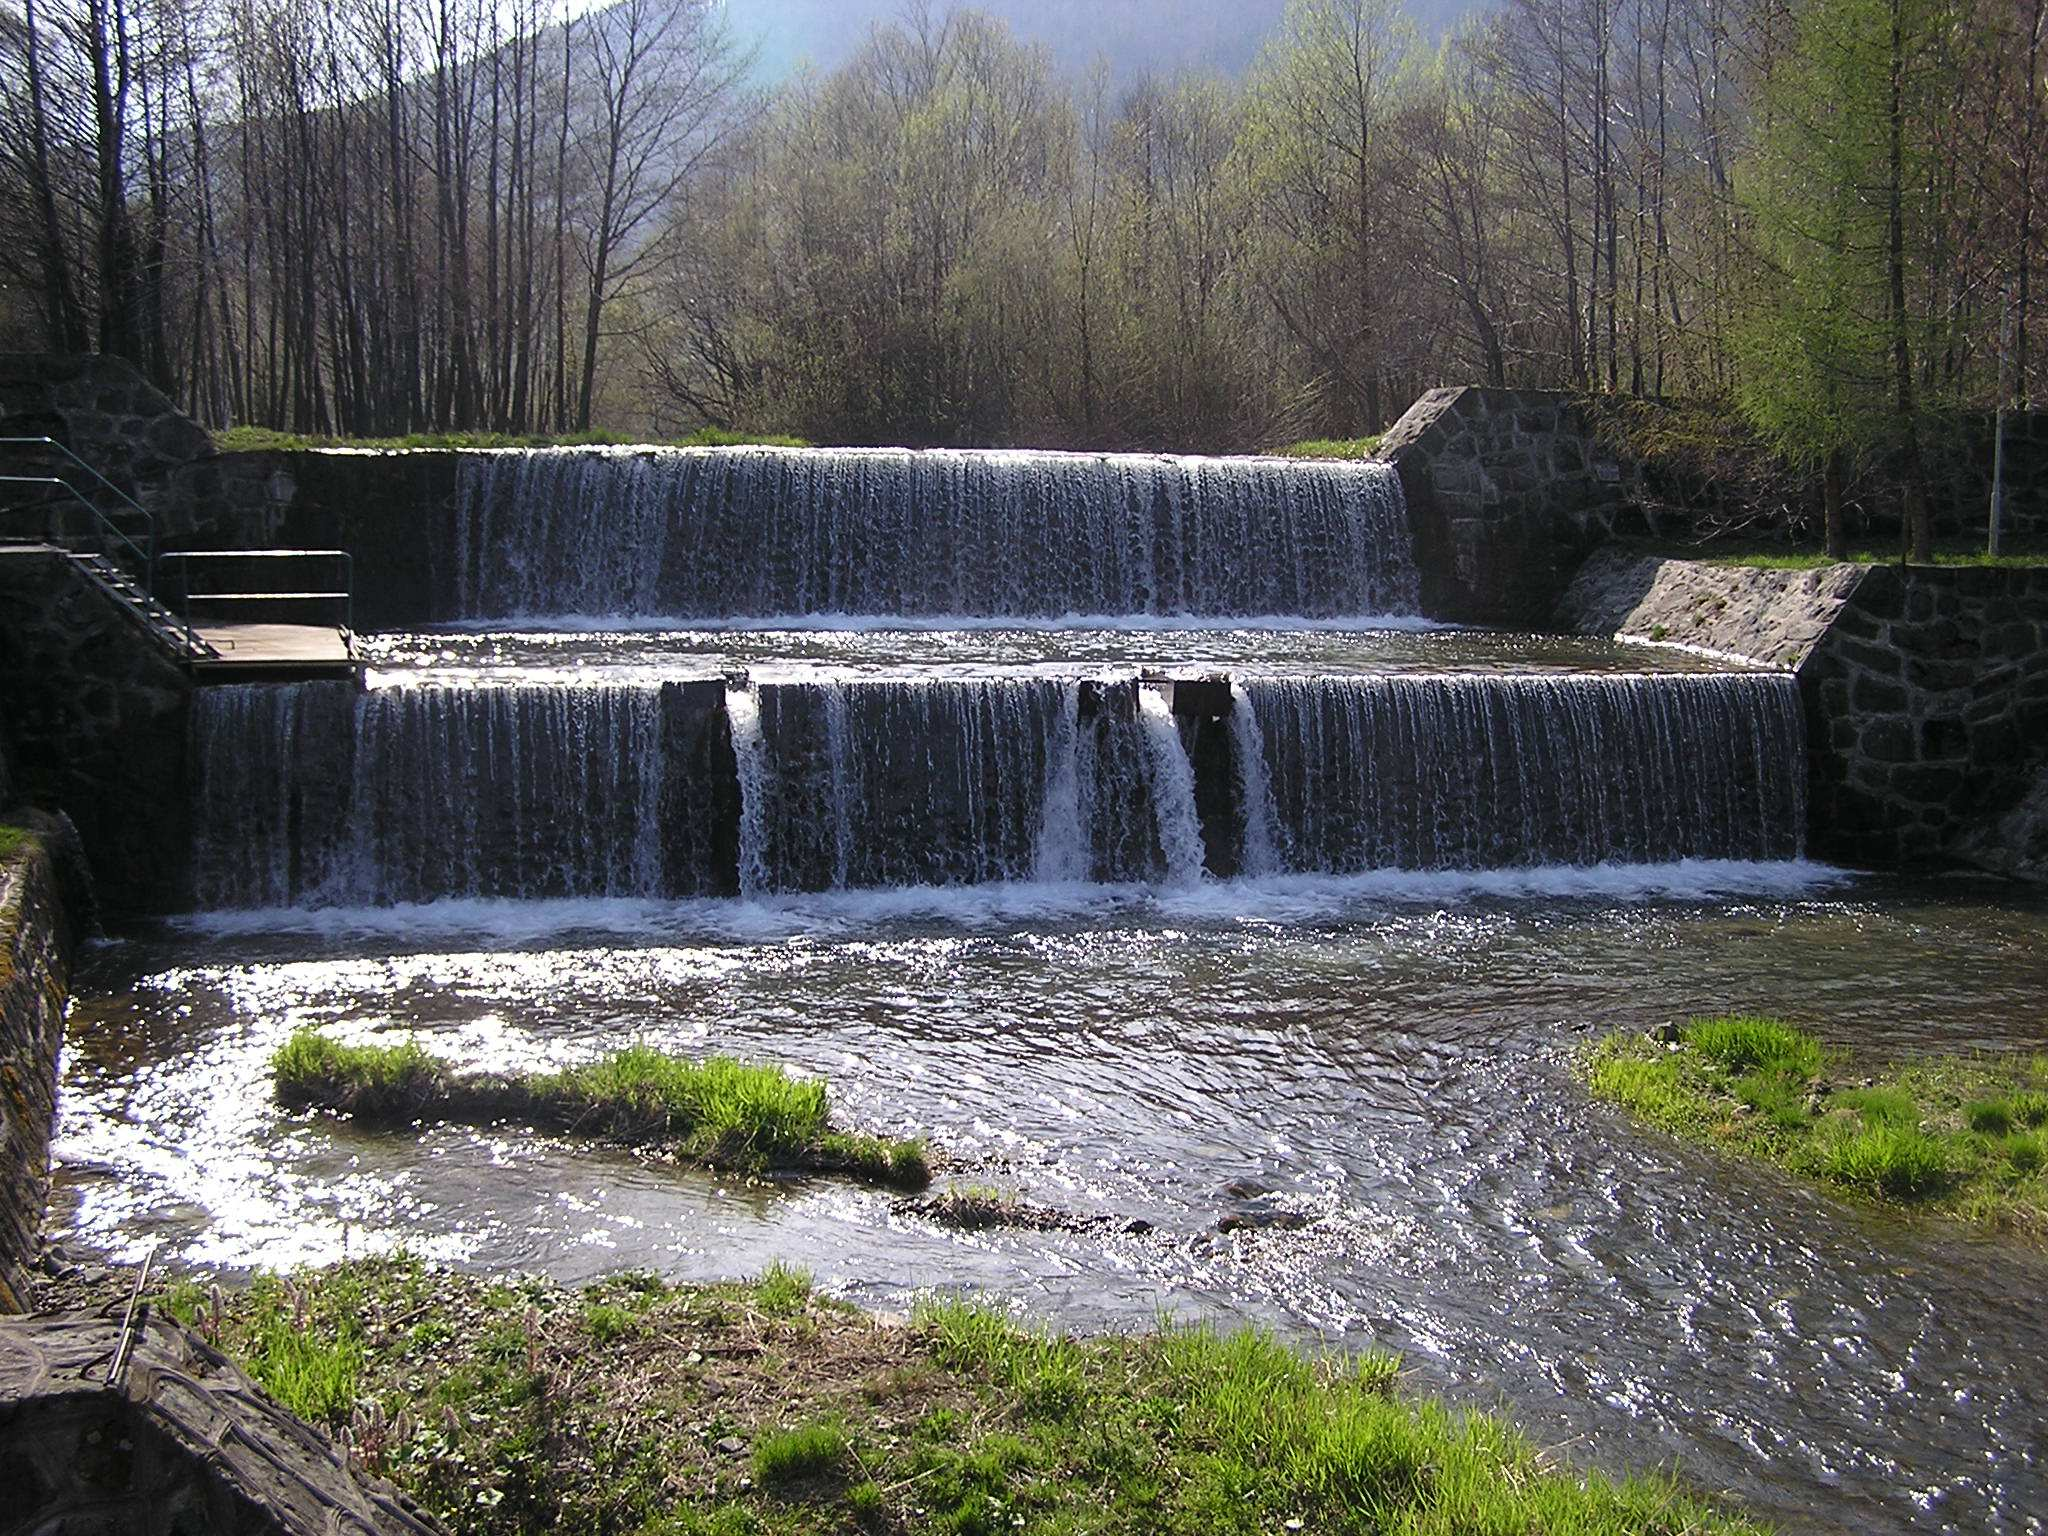 Kategorię jakości A2 przyznano także ujęciom zlokalizowanym na zbiorniku Czanieckim. Na tym akwenie wodnym są zlokalizowane dwa ujęcia.